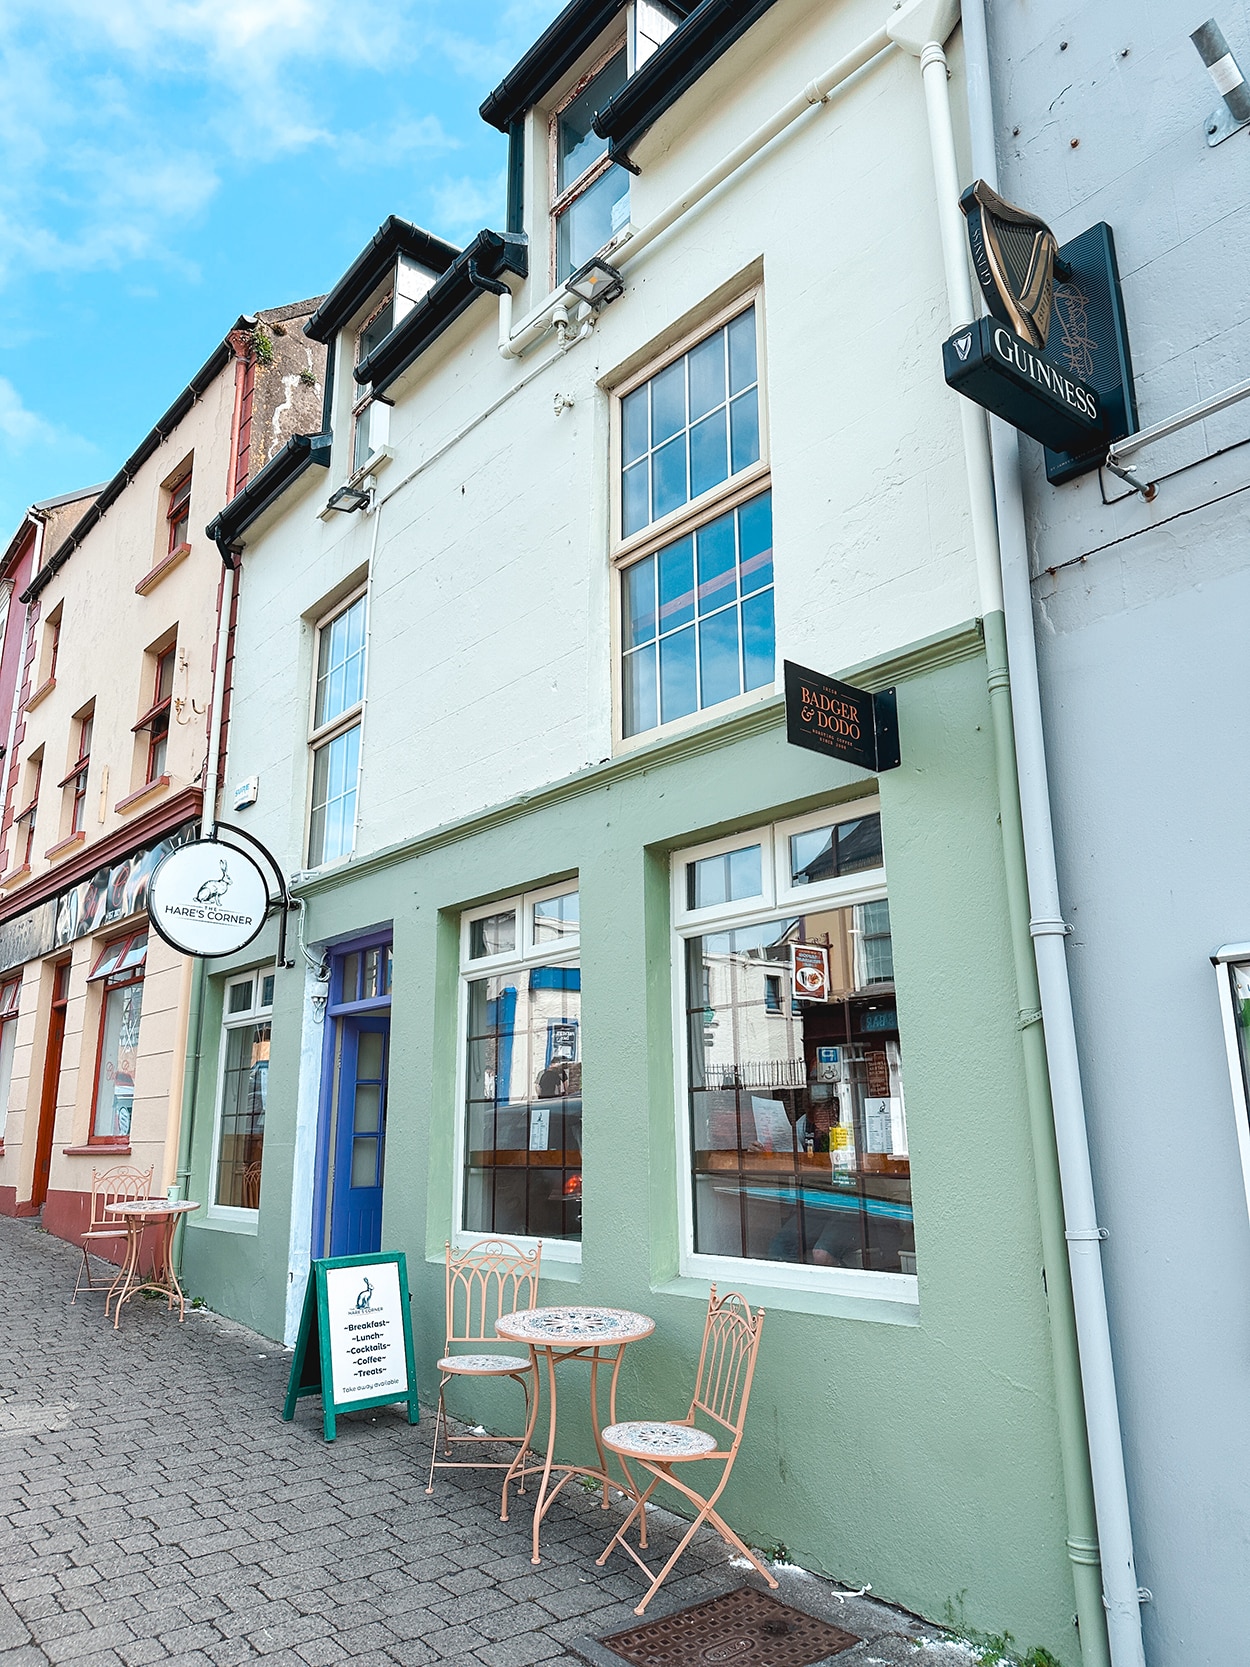 The Hares Corner - Restaurants in Dingle Ireland